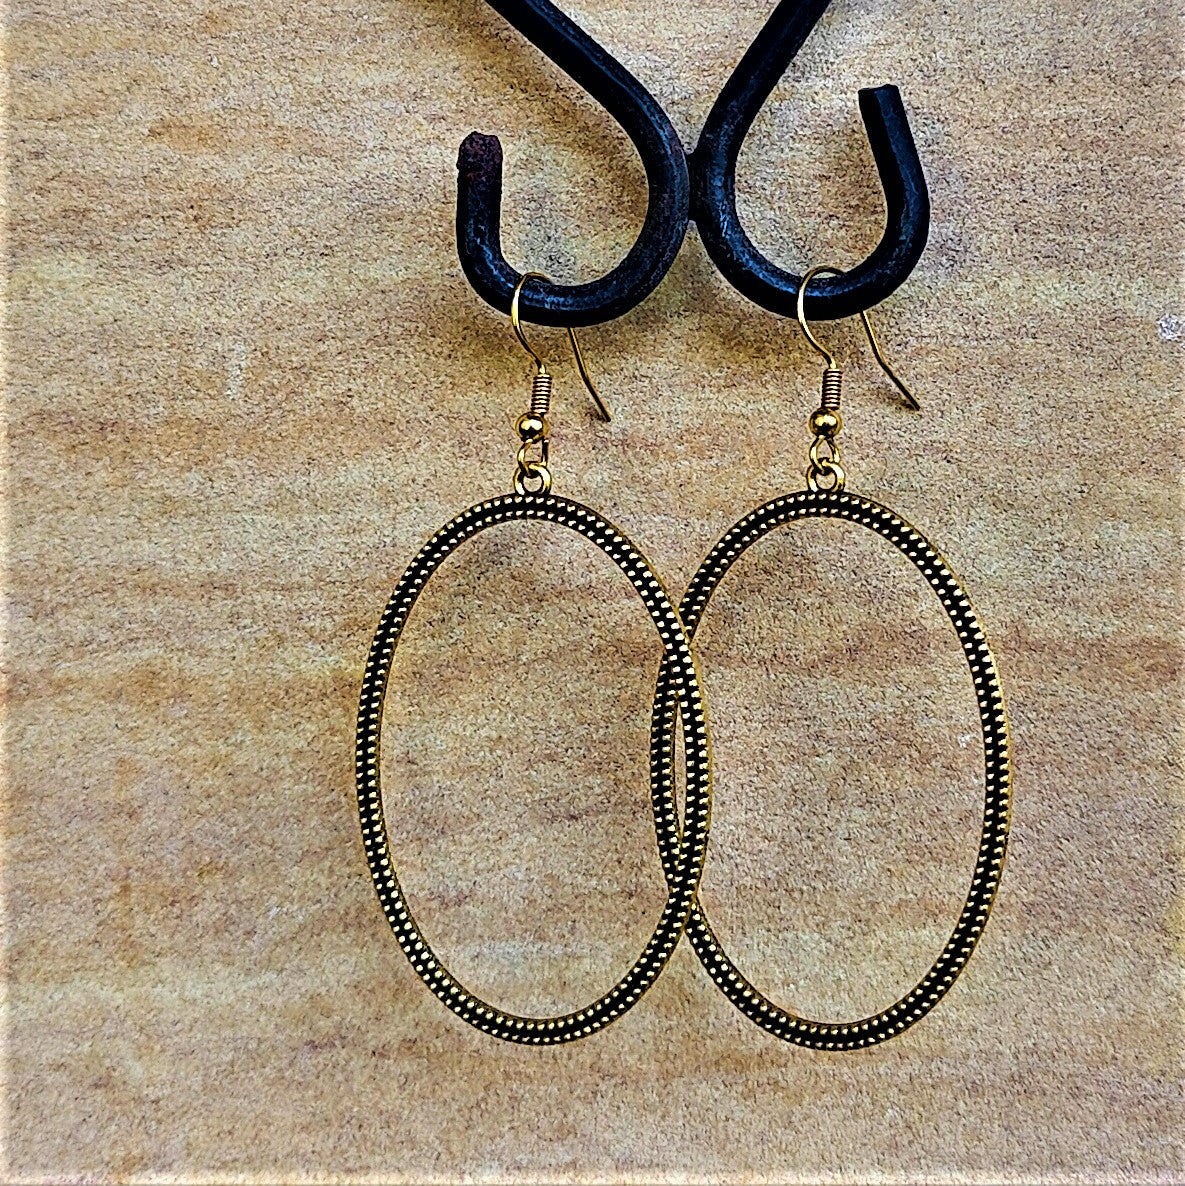 Antique Golden pair of Earrings Oval Jewelry Ear Rings Earrings Trincket